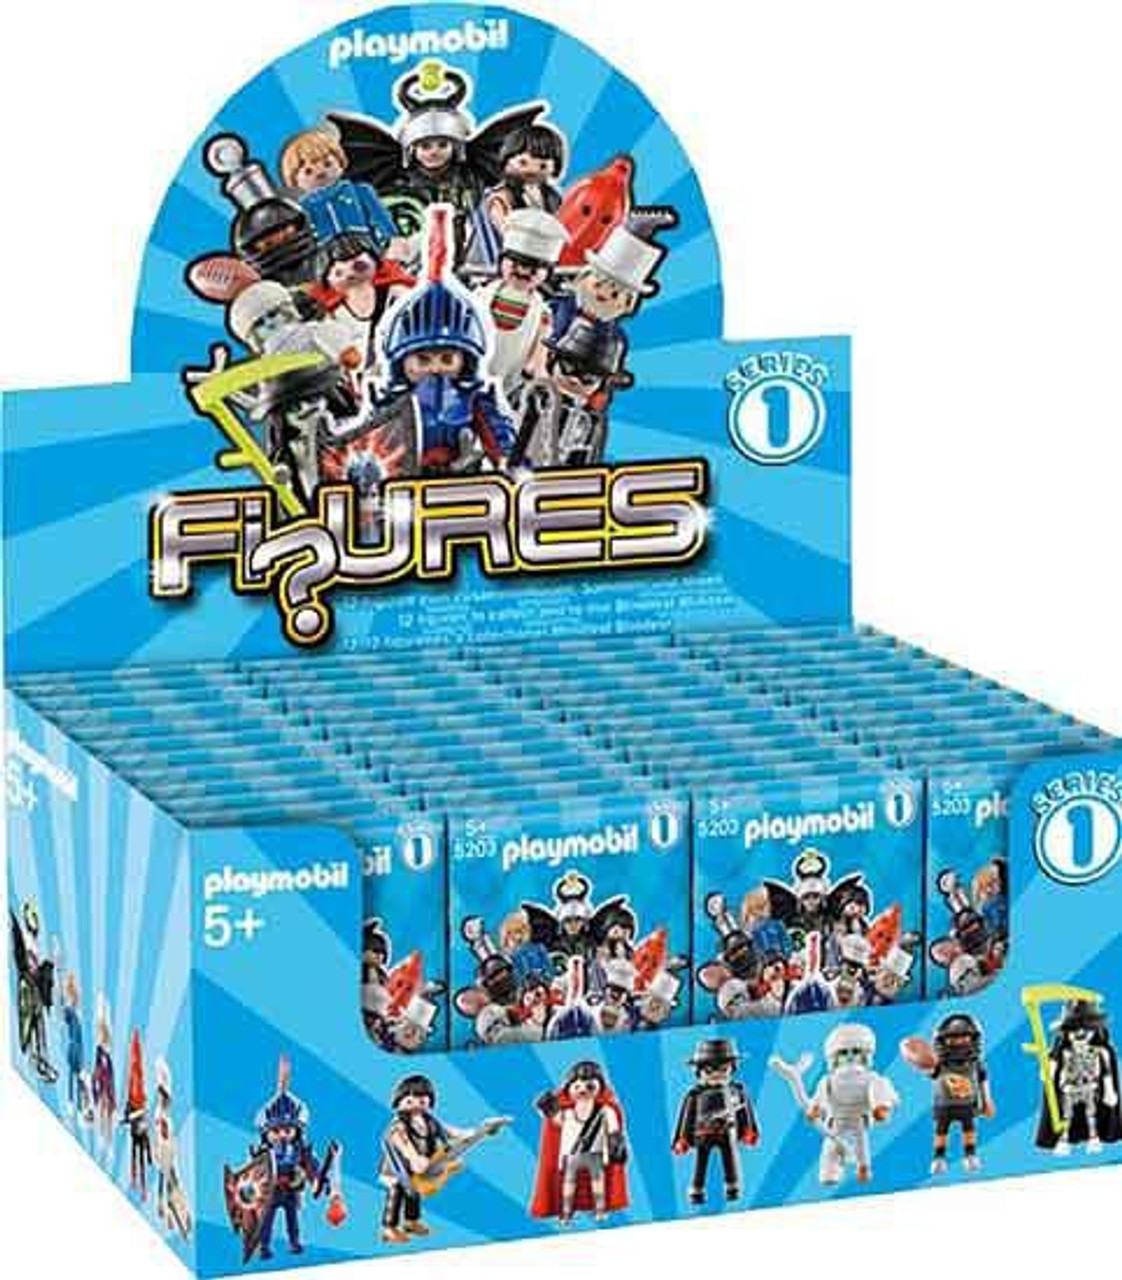 Grens Antibiotica hoofd Playmobil Figures Series 1 Blue Mystery Box 48 Packs - ToyWiz